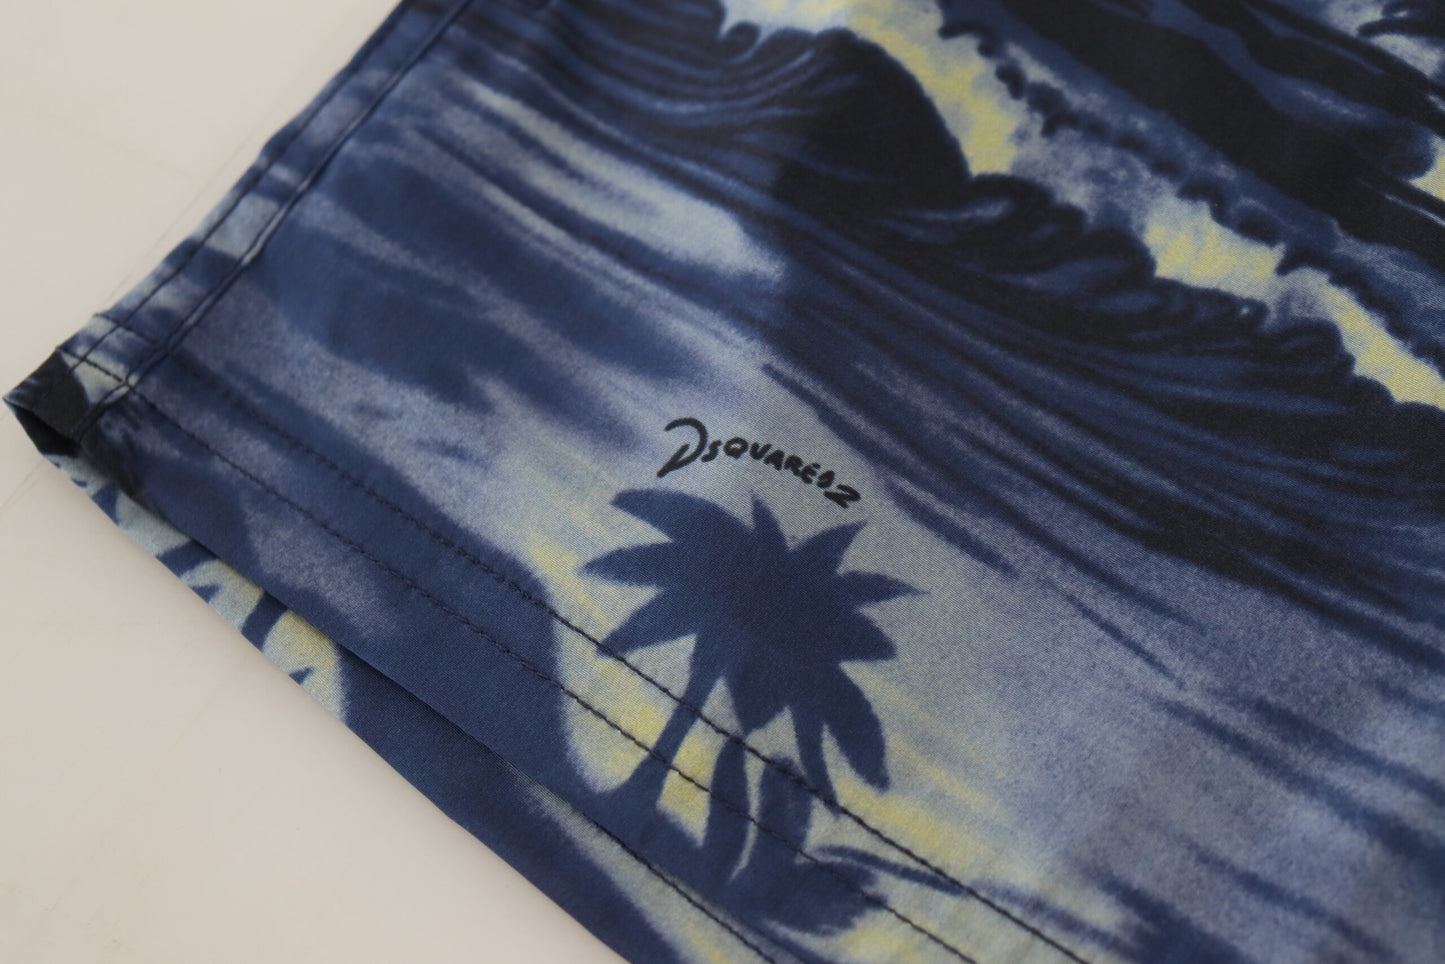 Dsquared² blu blu wave design beachwear shorts costume da bagno